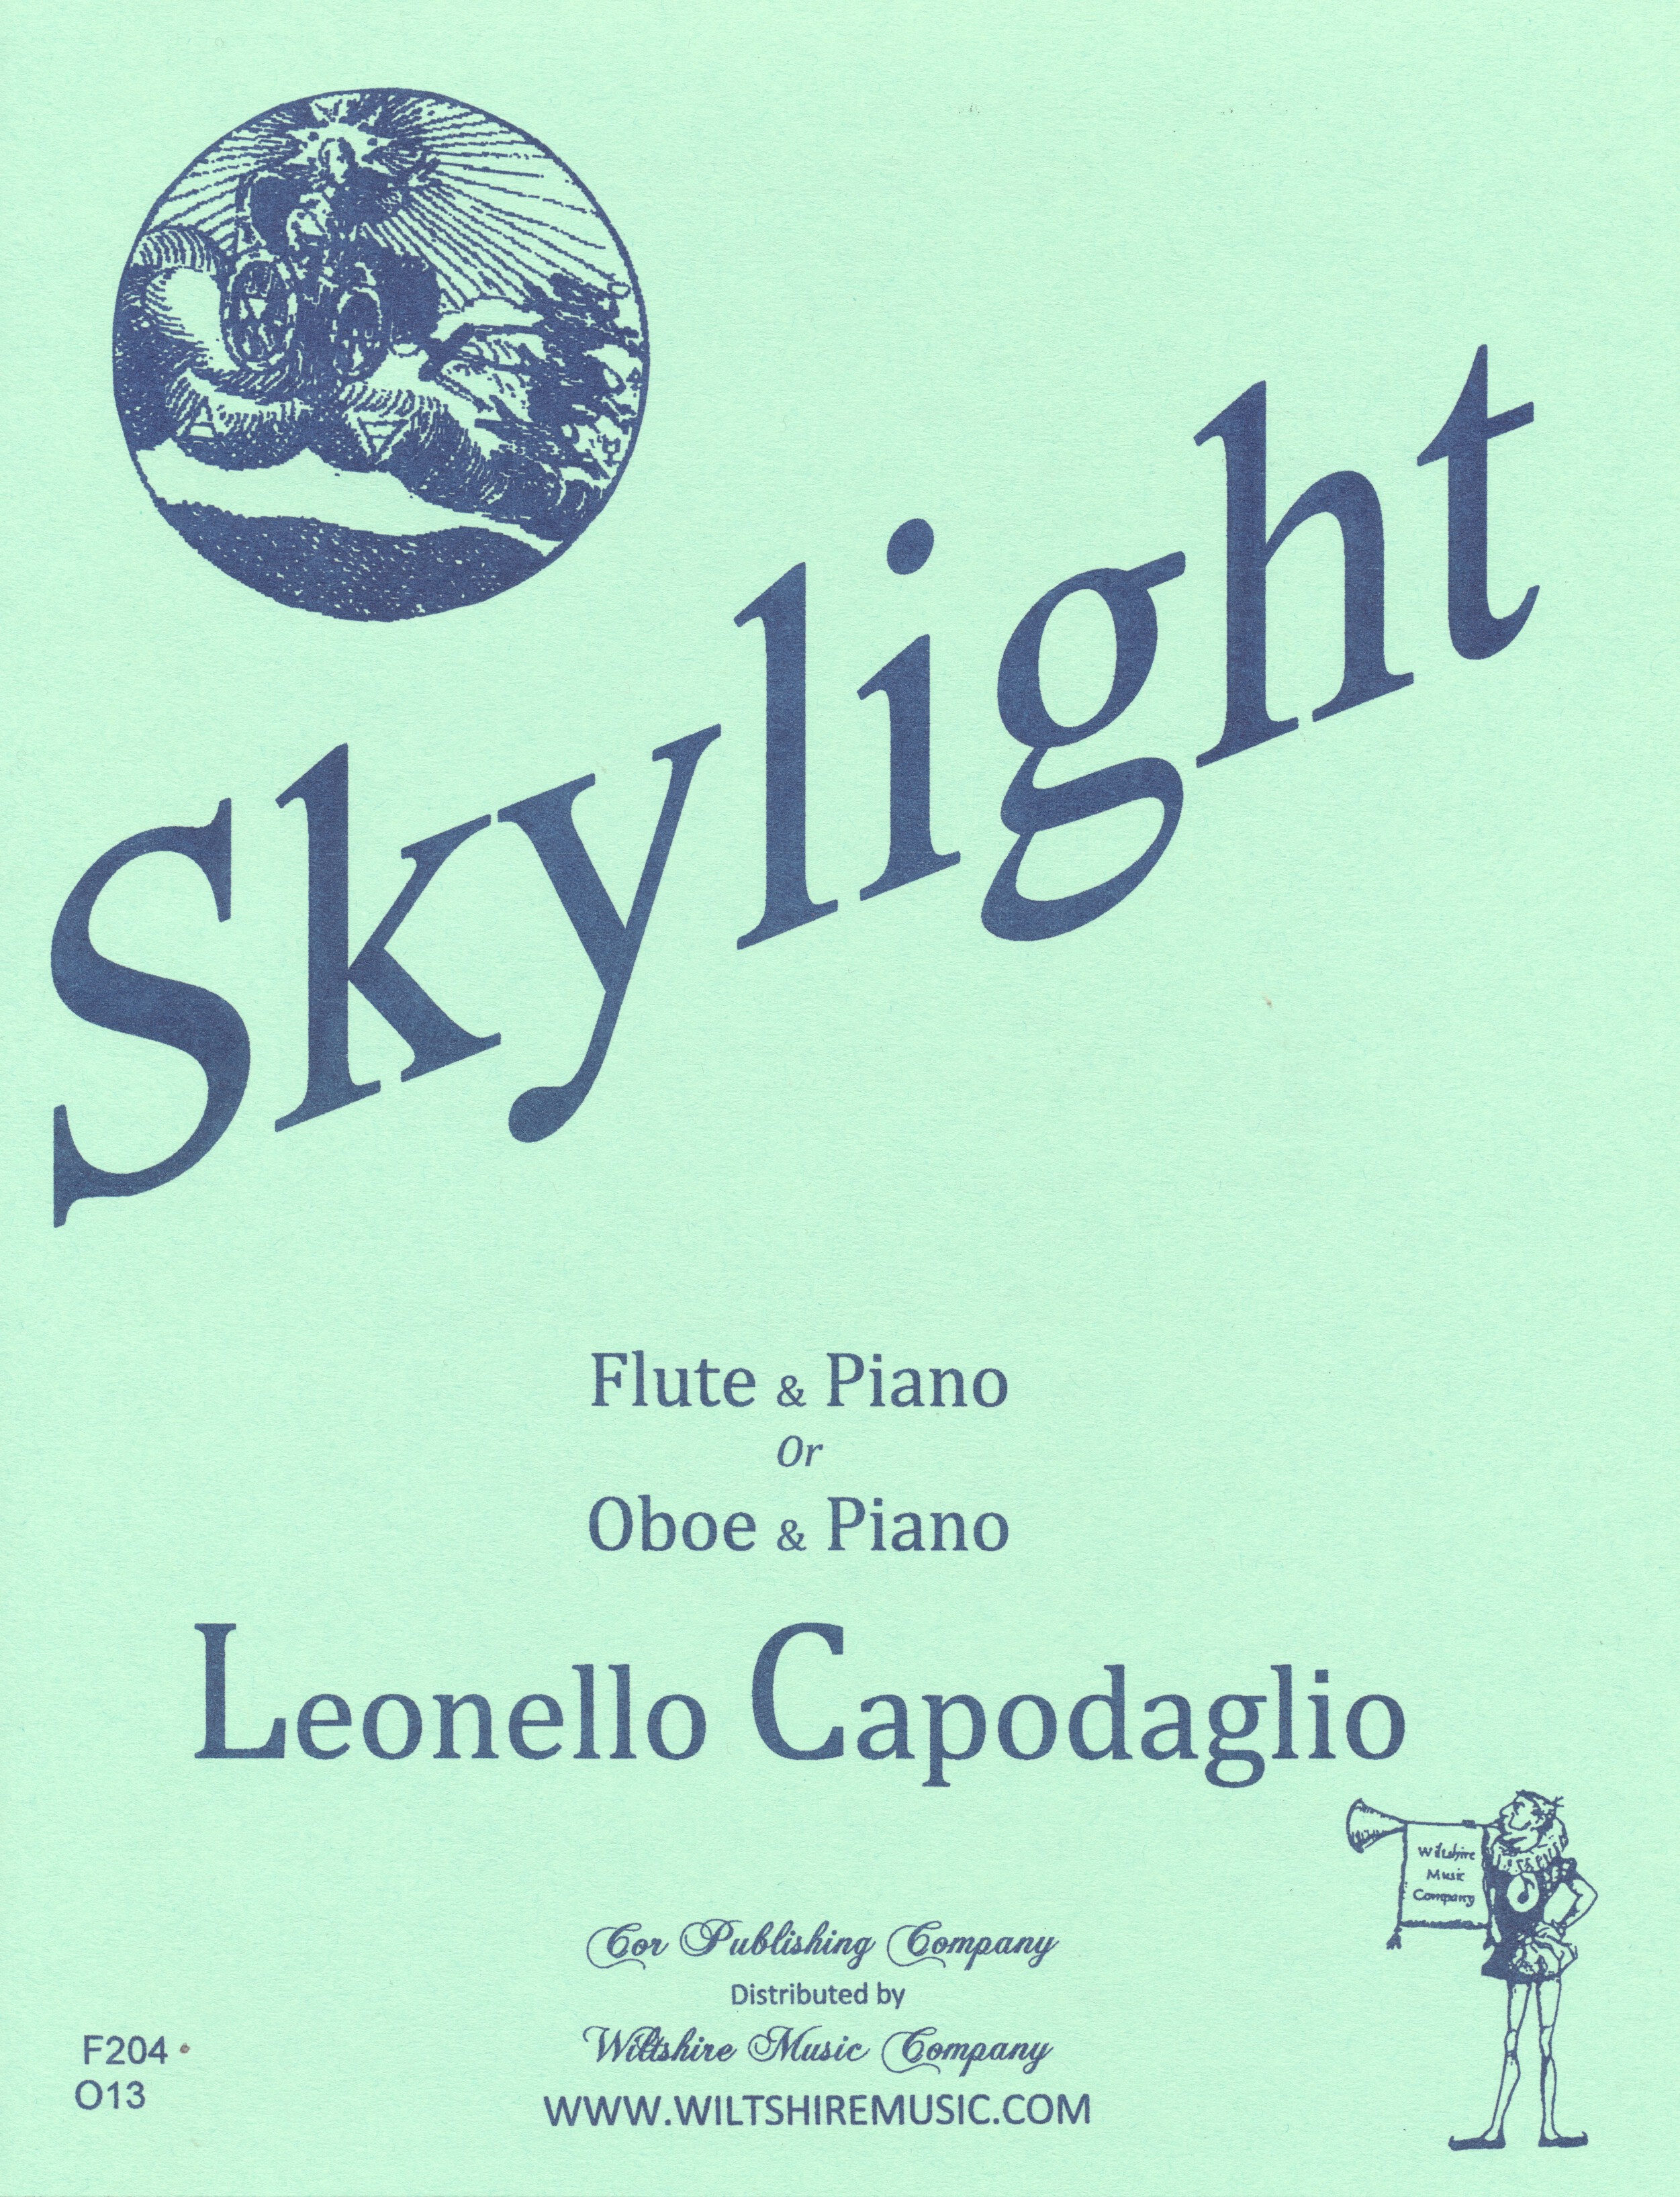 Skylight, Leonello Capodaglio